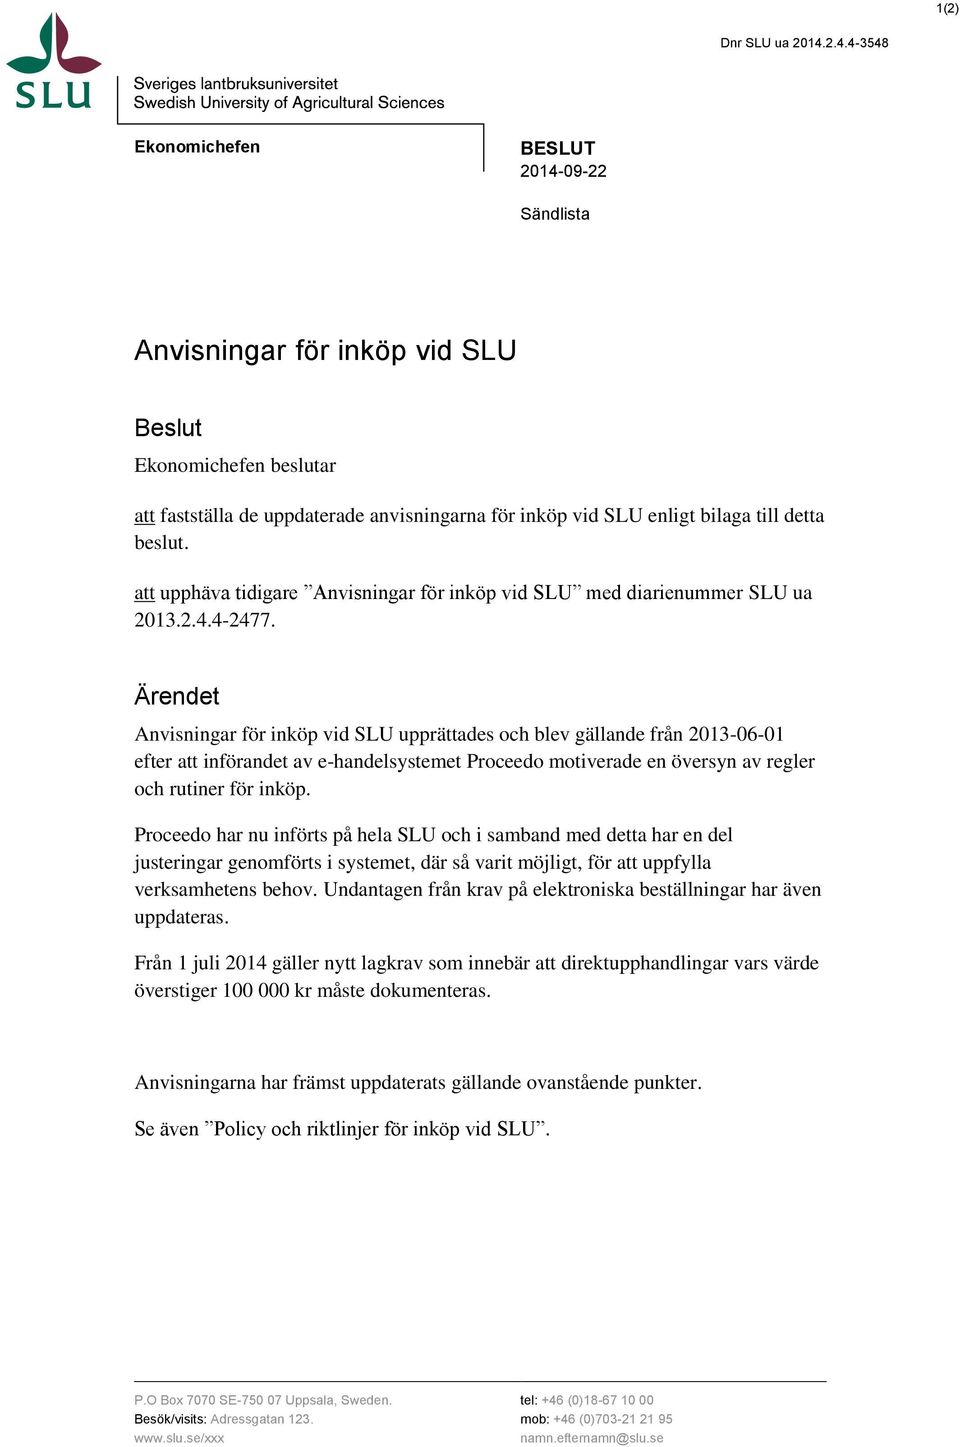 beslut. att upphäva tidigare Anvisningar för inköp vid SLU med diarienummer SLU ua 2013.2.4.4-2477.